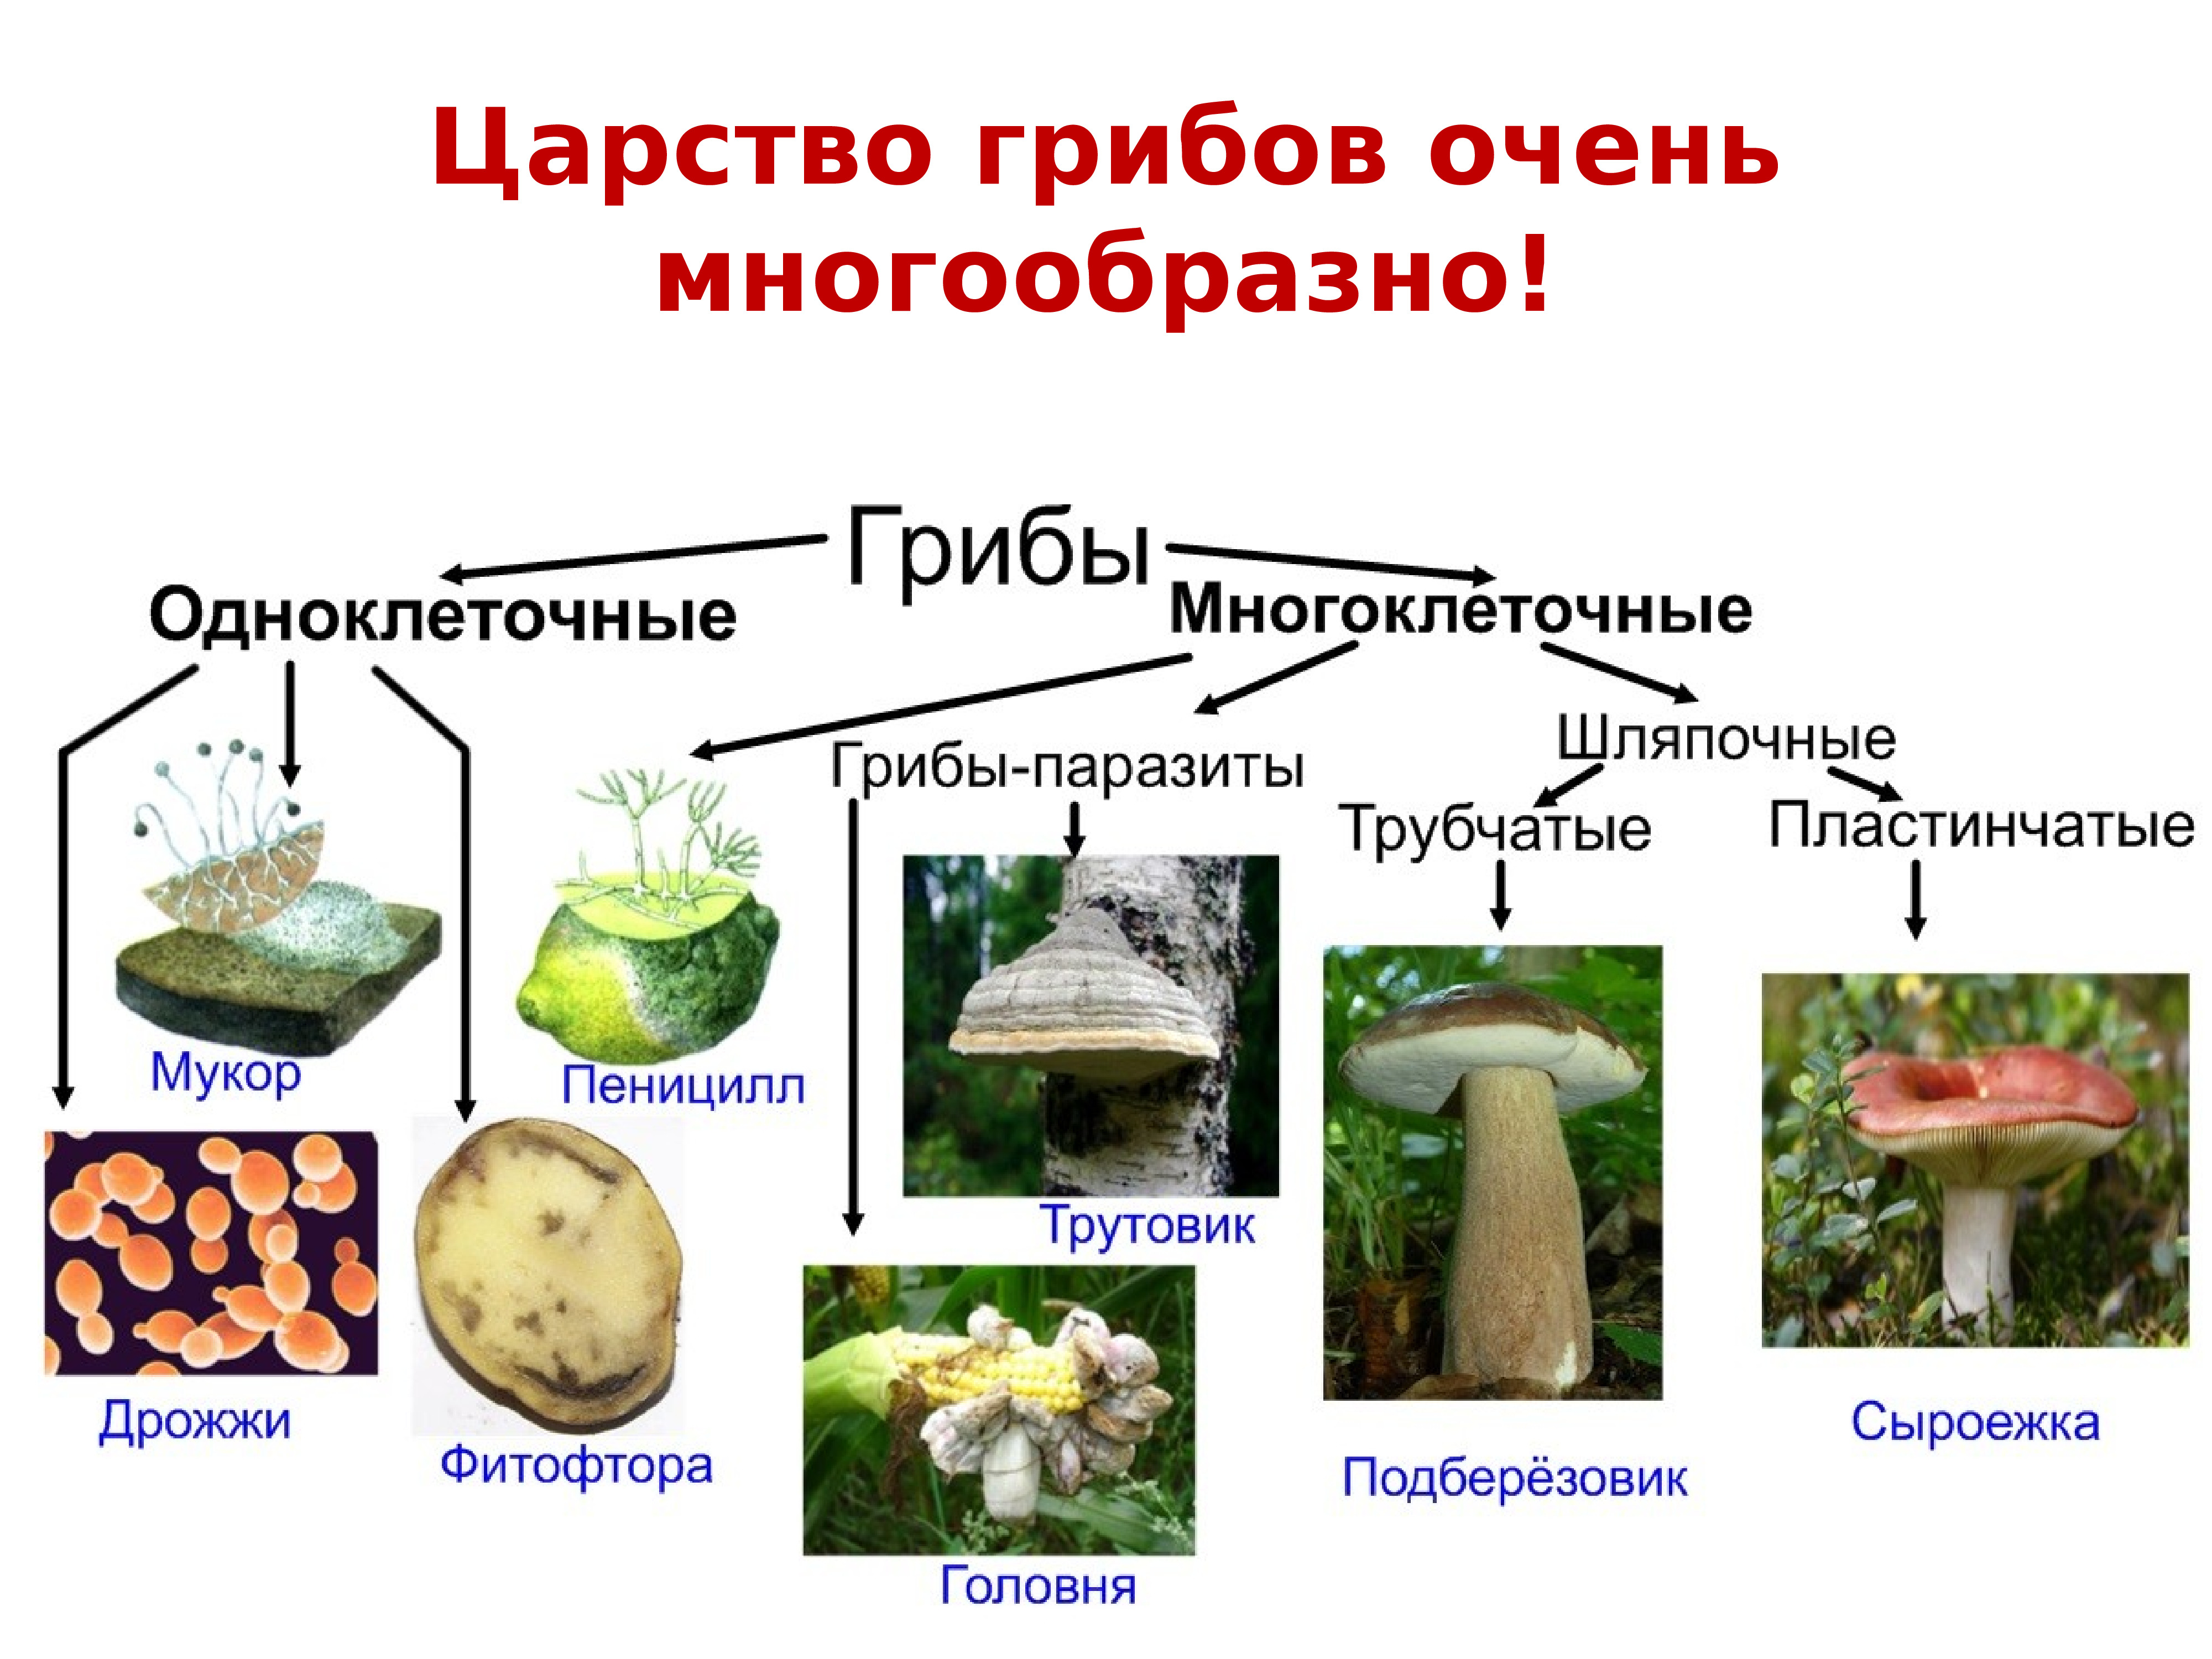 Шляпочные грибы многоклеточные. Одноклеточные и многоклеточные царство грибы. Классификация грибов одноклеточные и многоклеточные. Царство грибов представители царства. Схема грибы одноклеточные и многоклеточные.